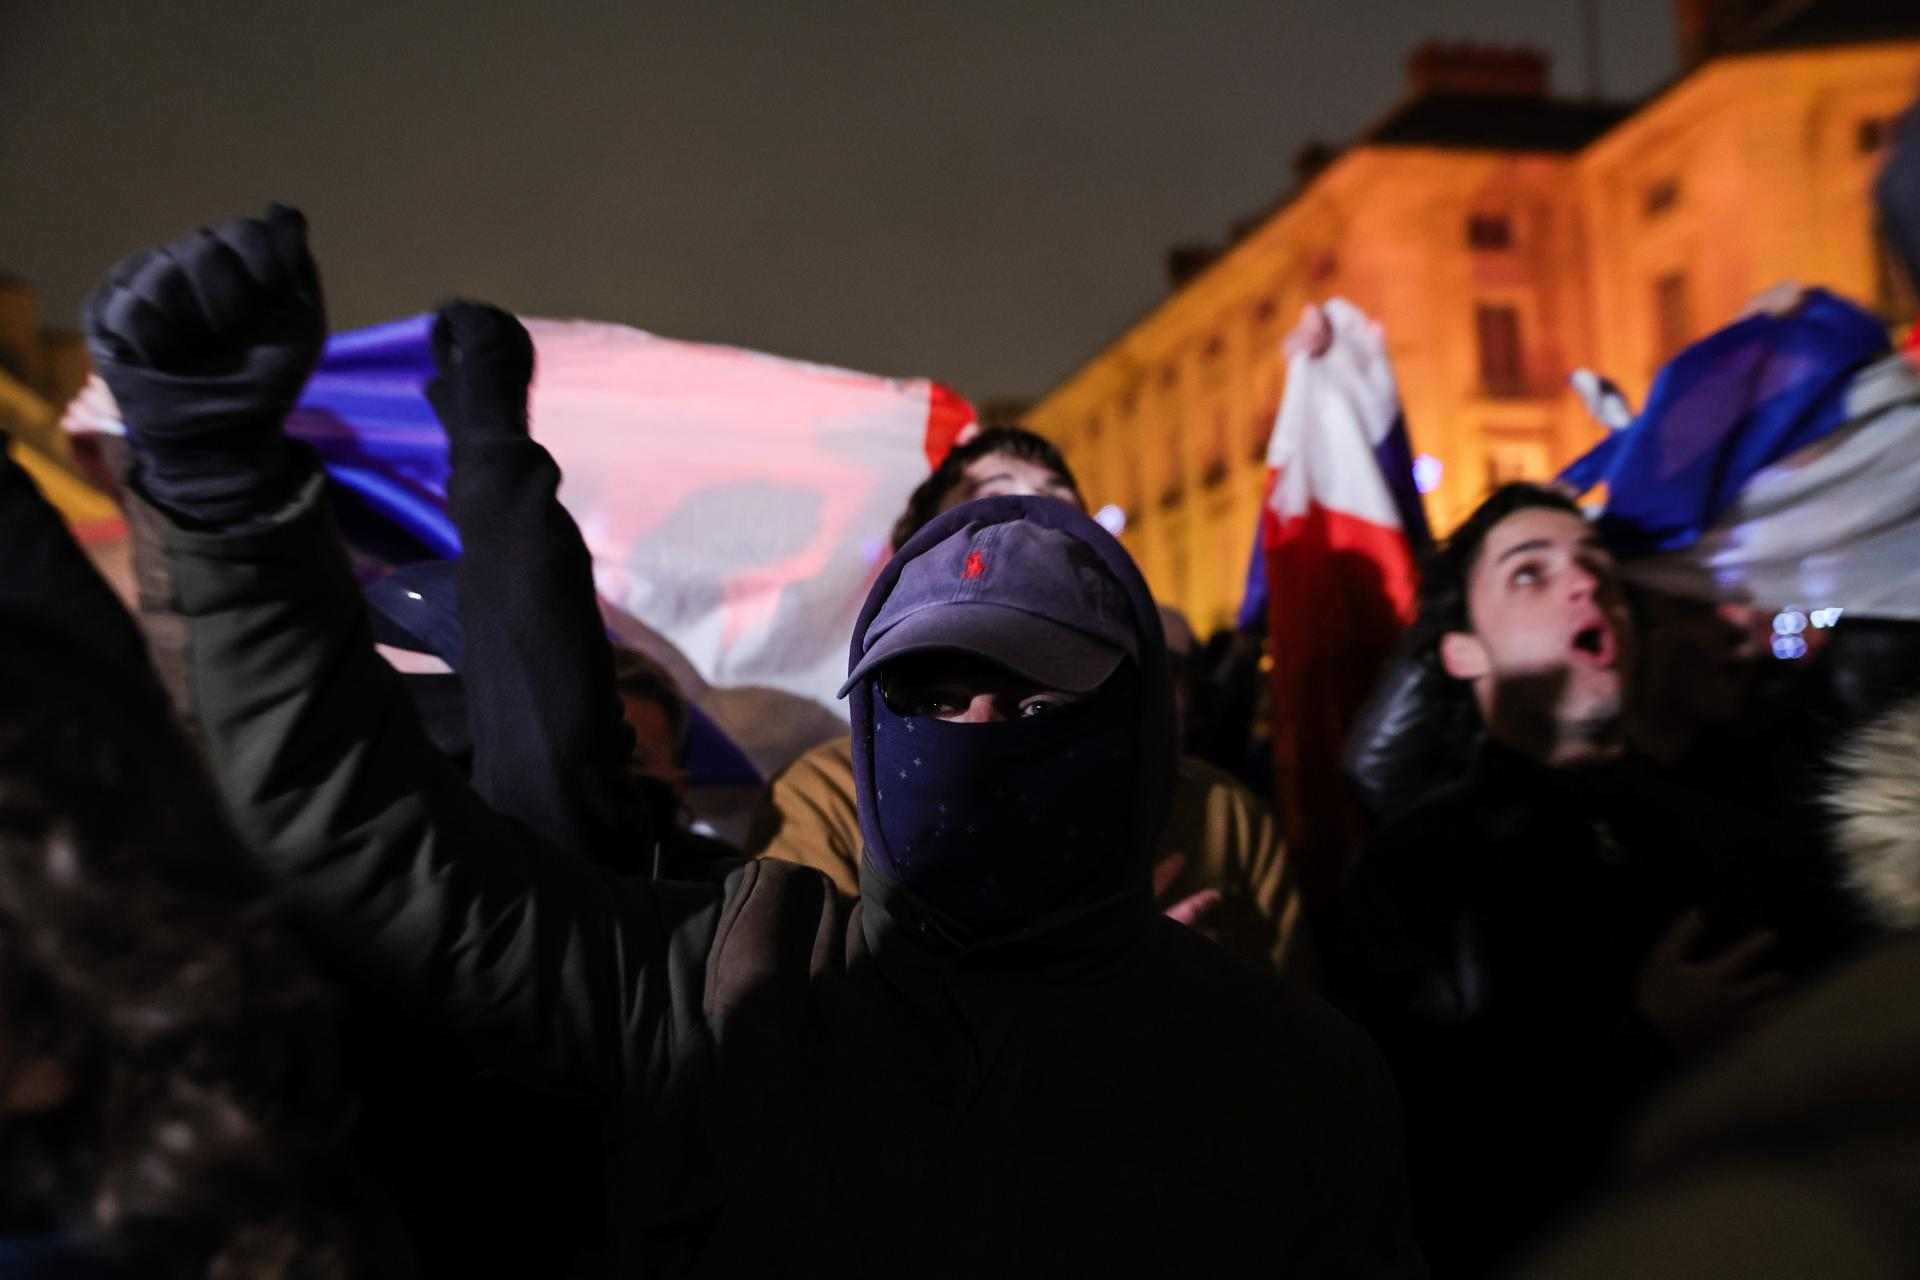 Personas participan en un homenaje organizado por el grupo de extrema derecha 'Les natifs' (los nativos), para rendir homenaje a los jóvenes asesinados una semana antes, en París, Francia / TERESA SUÁREZ - EPA - EFE